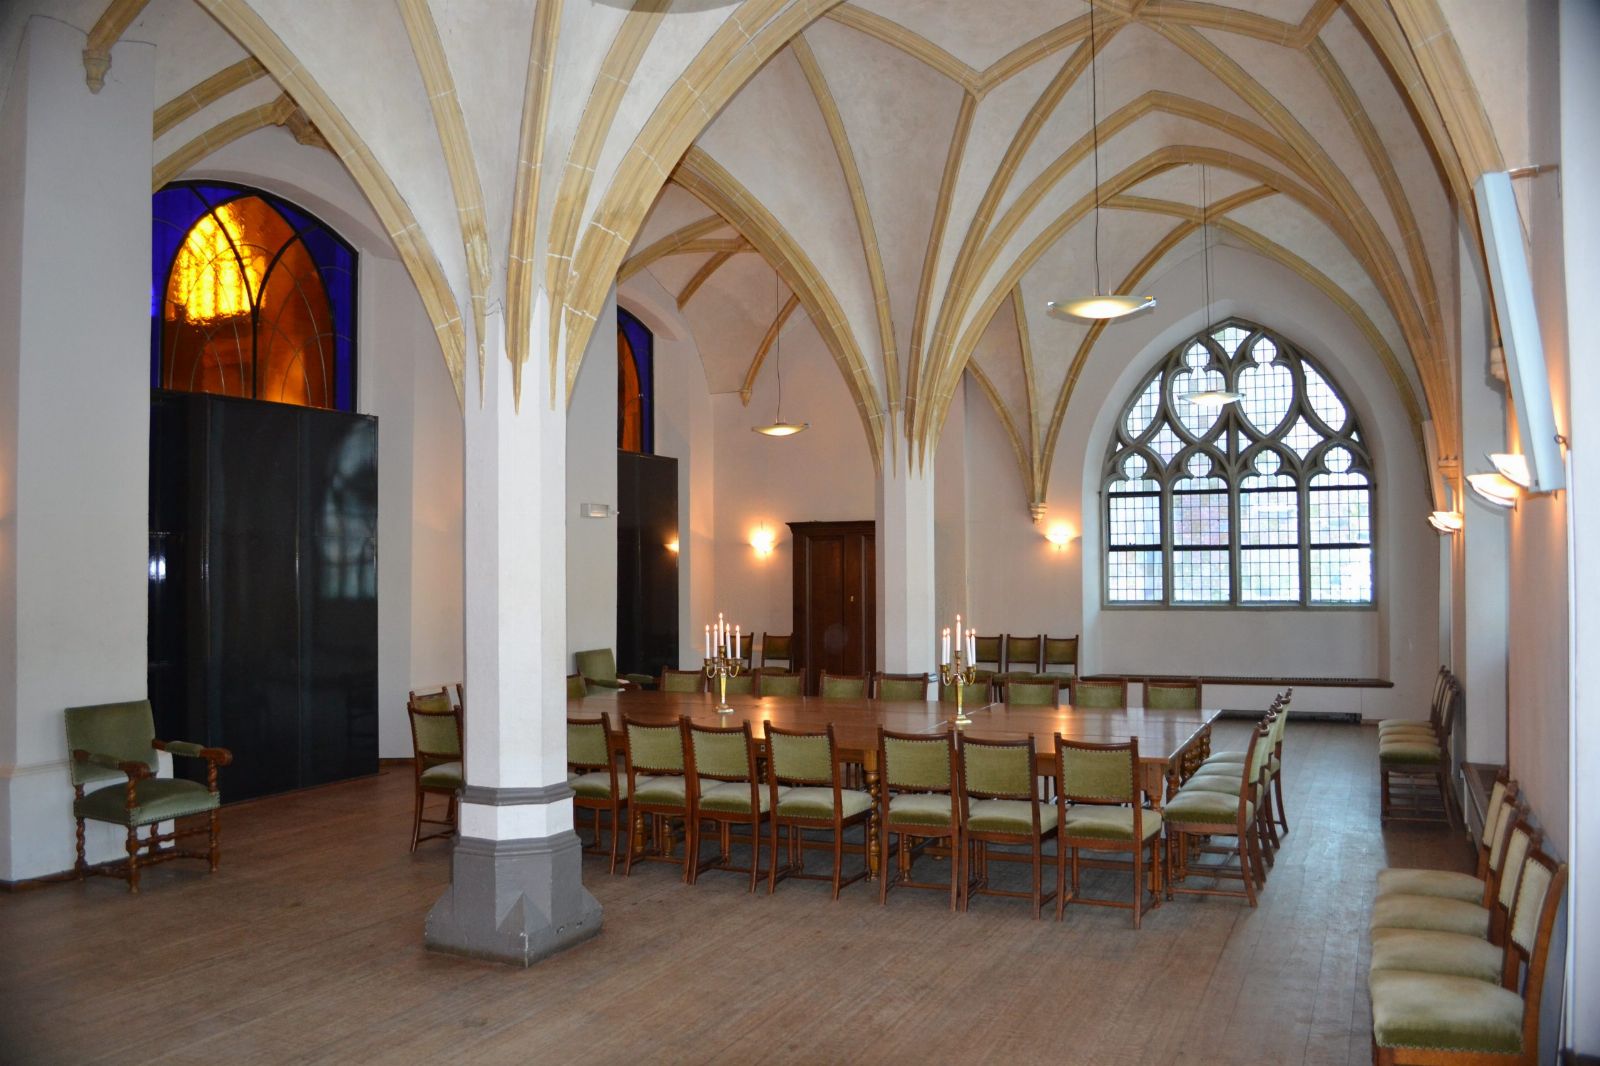  - Martinikerk Groningen